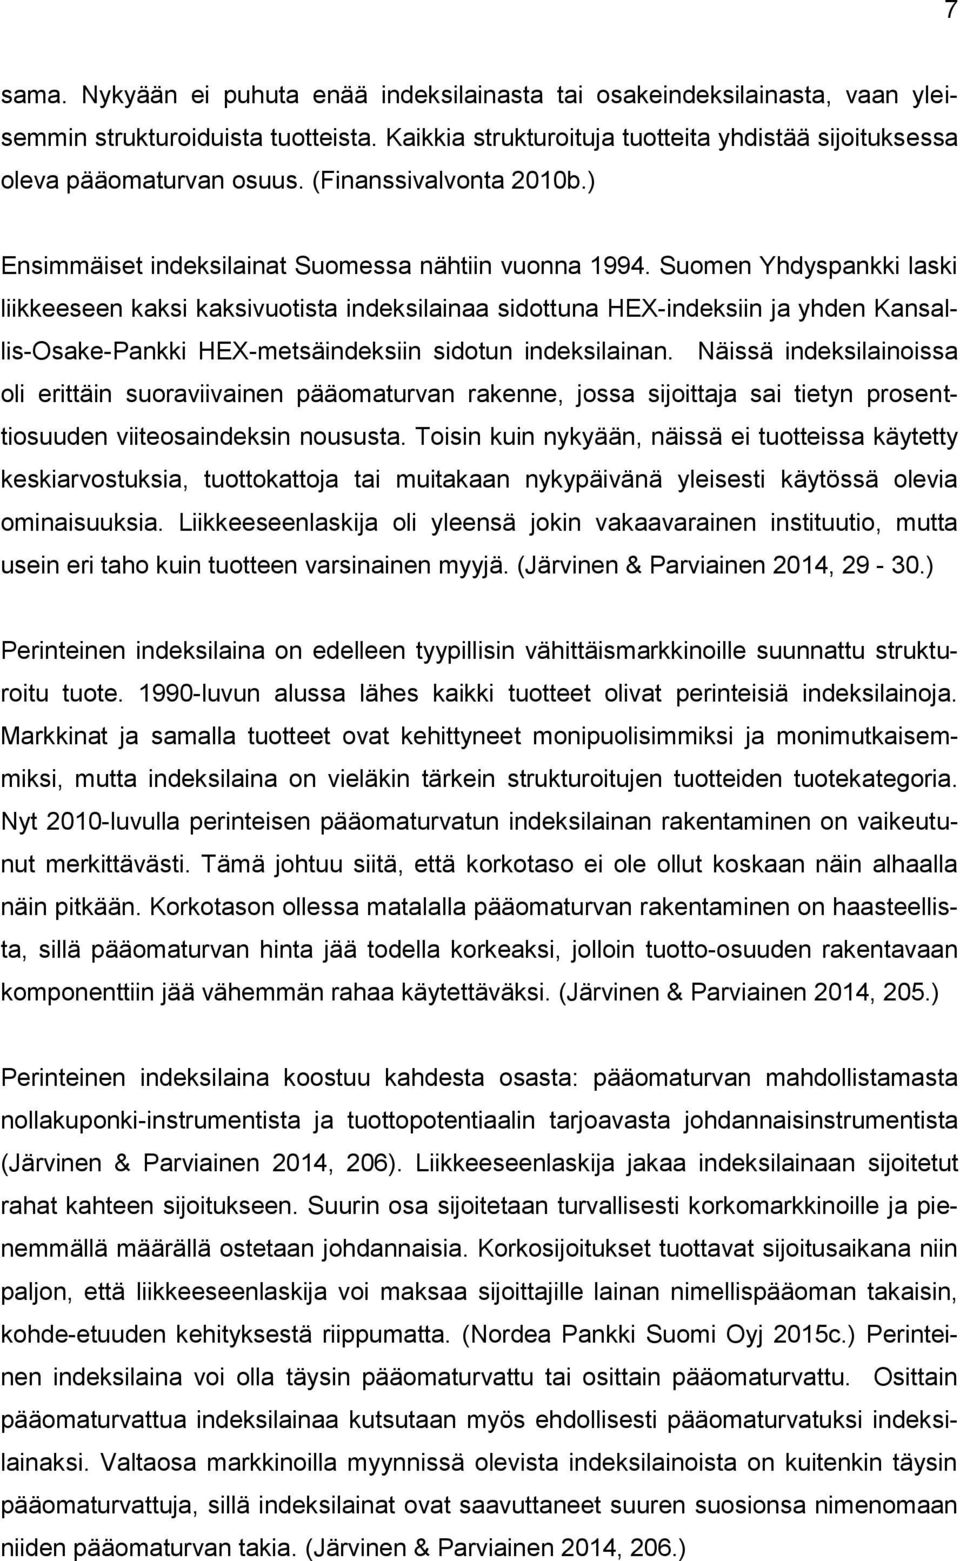 Suomen Yhdyspankki laski liikkeeseen kaksi kaksivuotista indeksilainaa sidottuna HEX-indeksiin ja yhden Kansallis-Osake-Pankki HEX-metsäindeksiin sidotun indeksilainan.